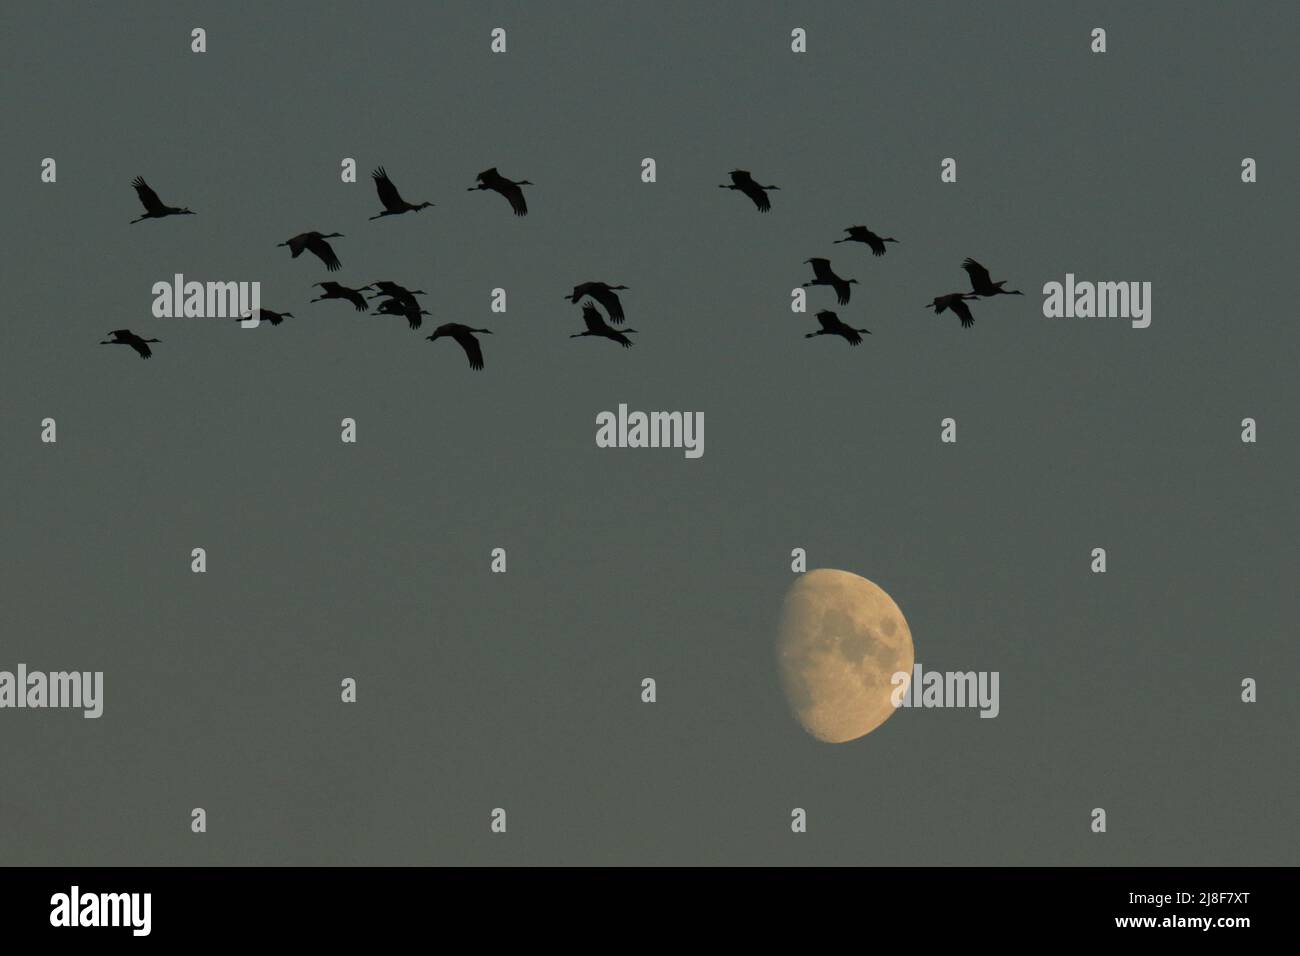 Eine Herde von achtzehn Sandhill Cranes (Antigone canadensis), die in der Dämmerung in Silhouette über dem Mond fliegen. Aufgenommen in Victoria, BC, Kanada. Stockfoto